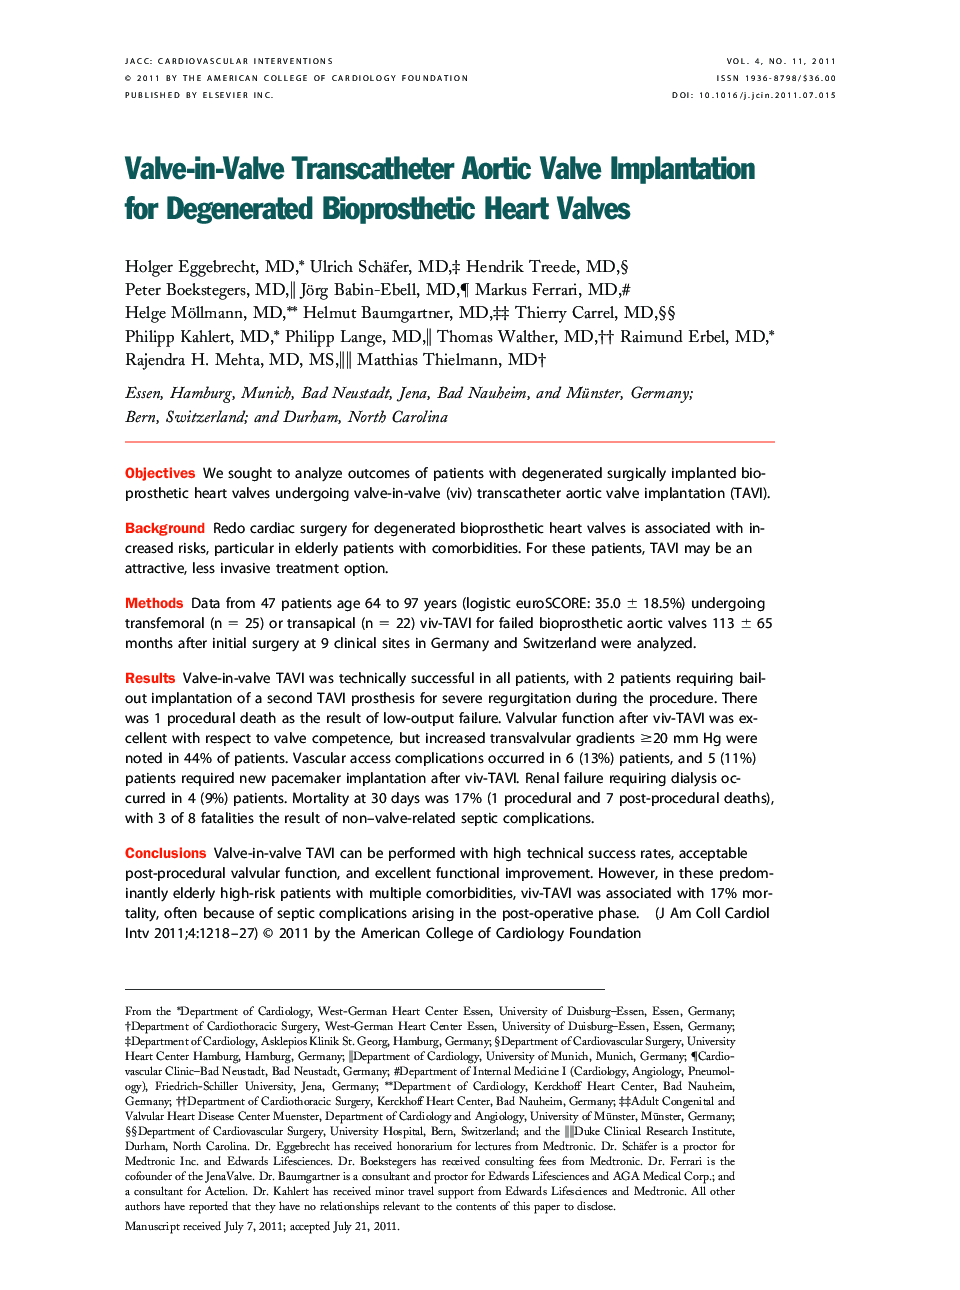 Valve-in-Valve Transcatheter Aortic Valve Implantation for Degenerated Bioprosthetic Heart Valves 